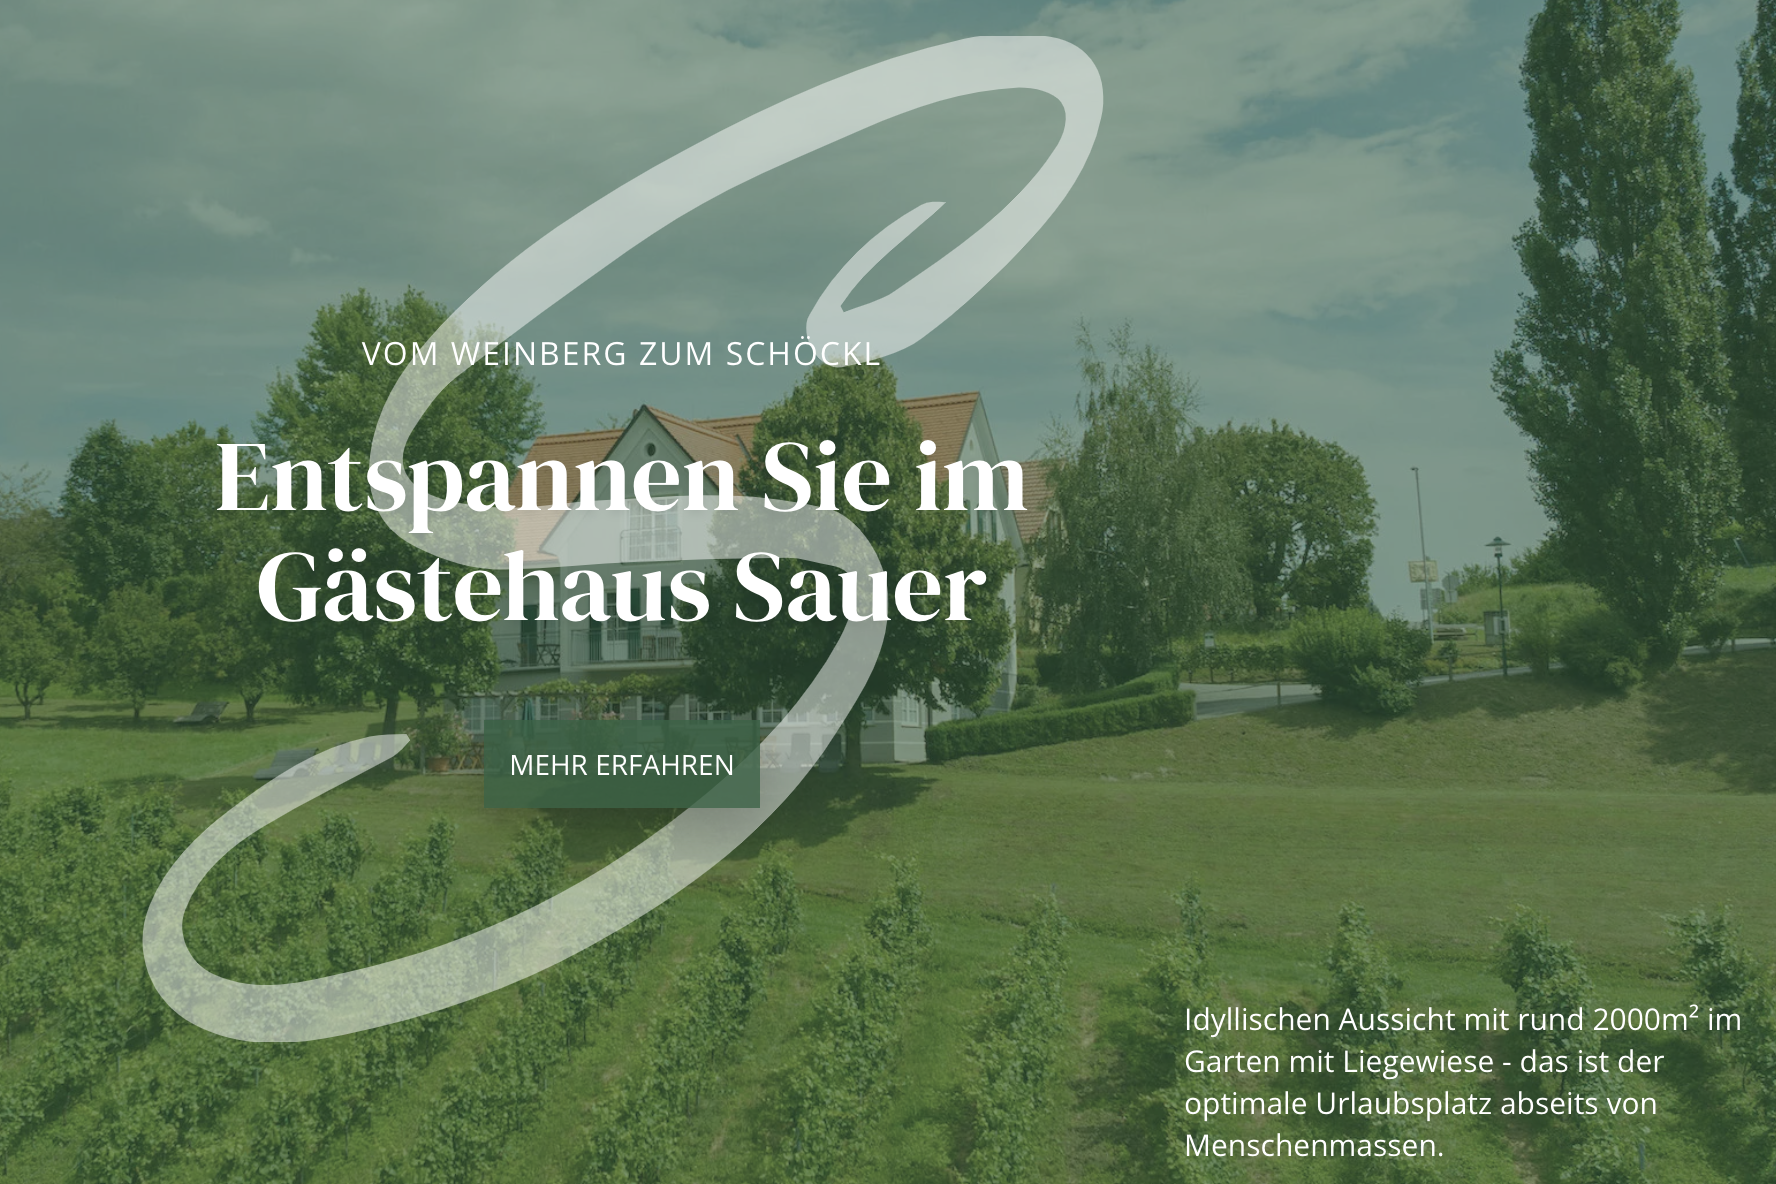 Новий веб-сайт – Ласкаво просимо до гостьового будинку Sauer у Кіцеку!